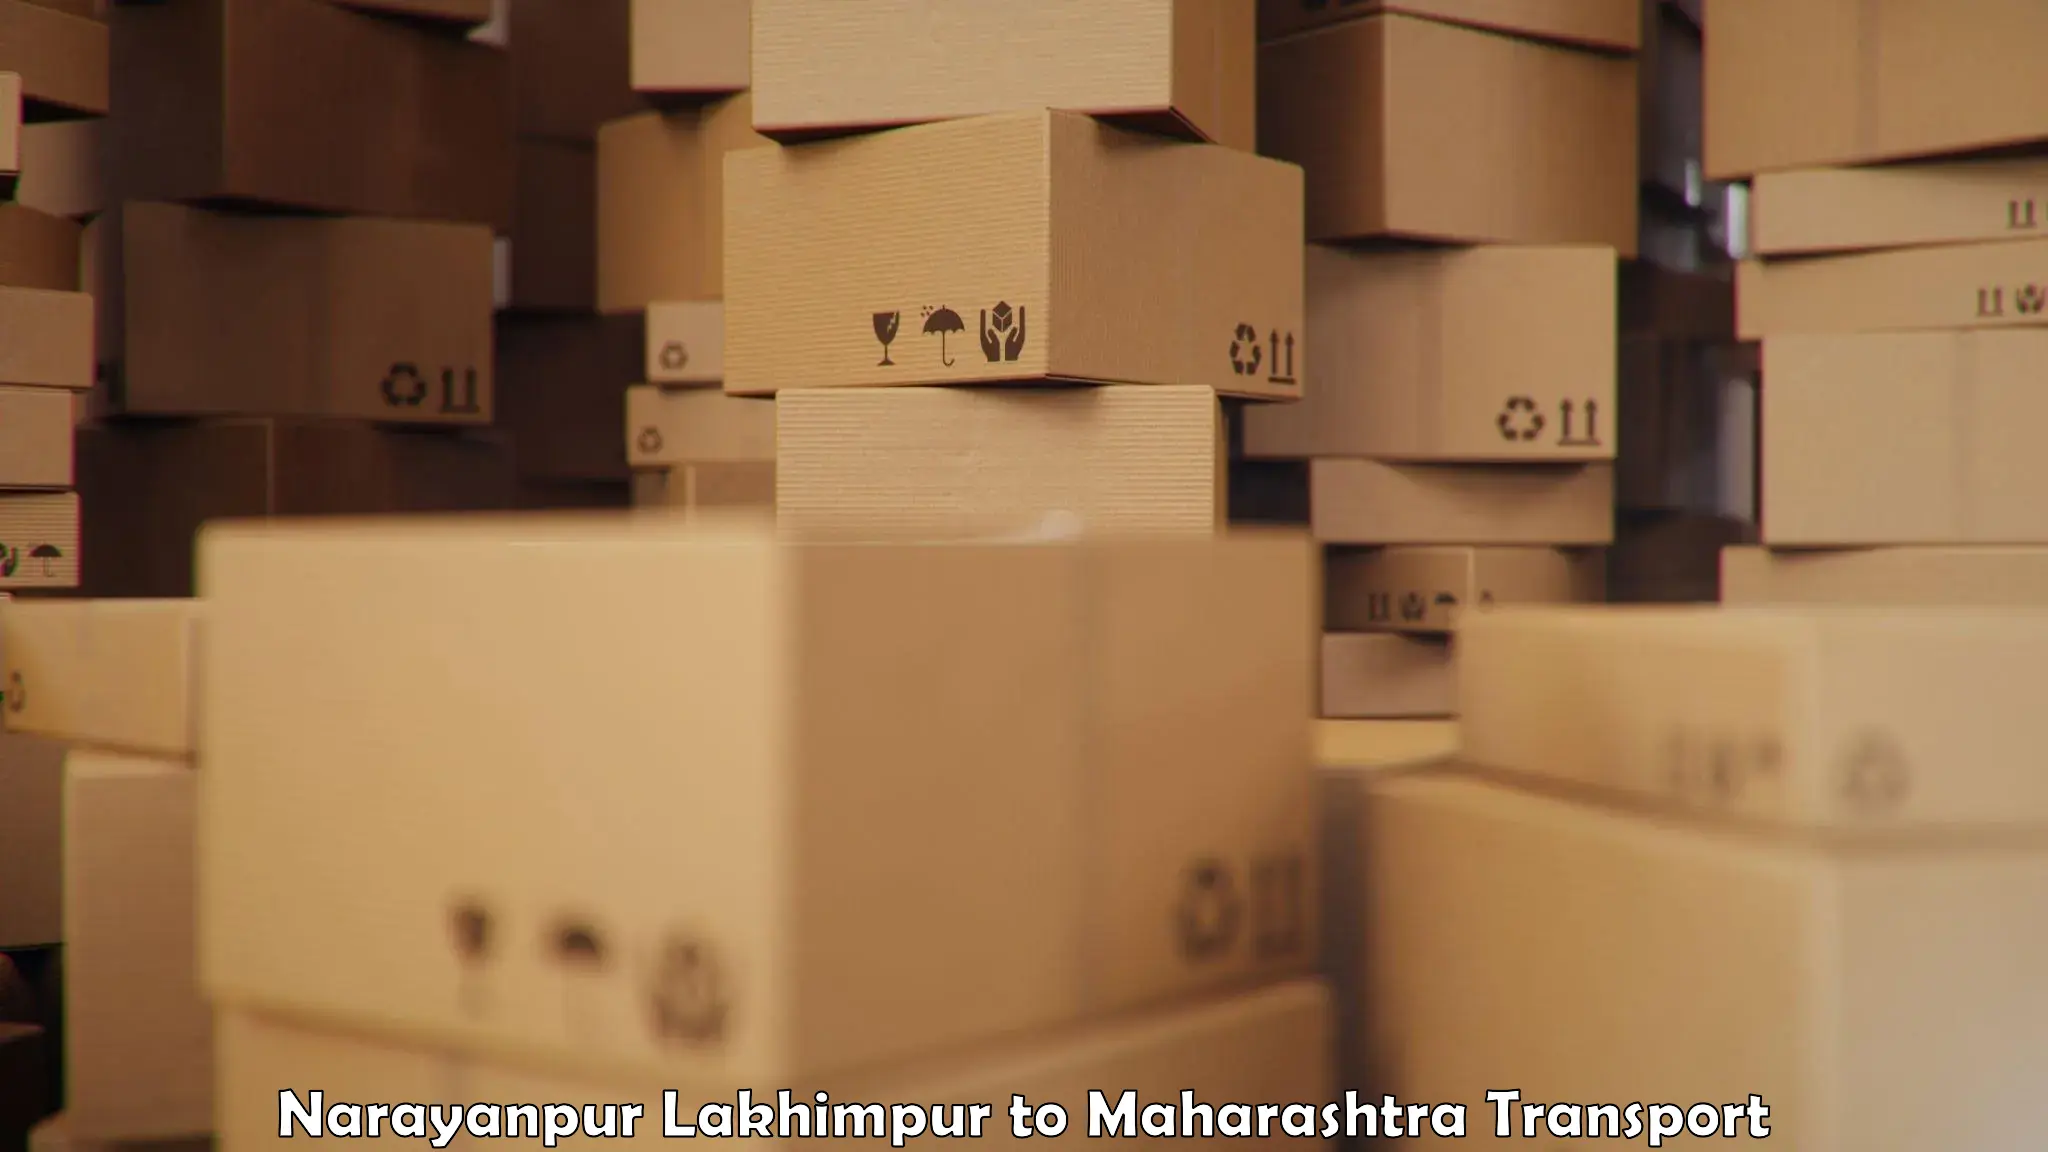 Online transport service Narayanpur Lakhimpur to Kopargaon